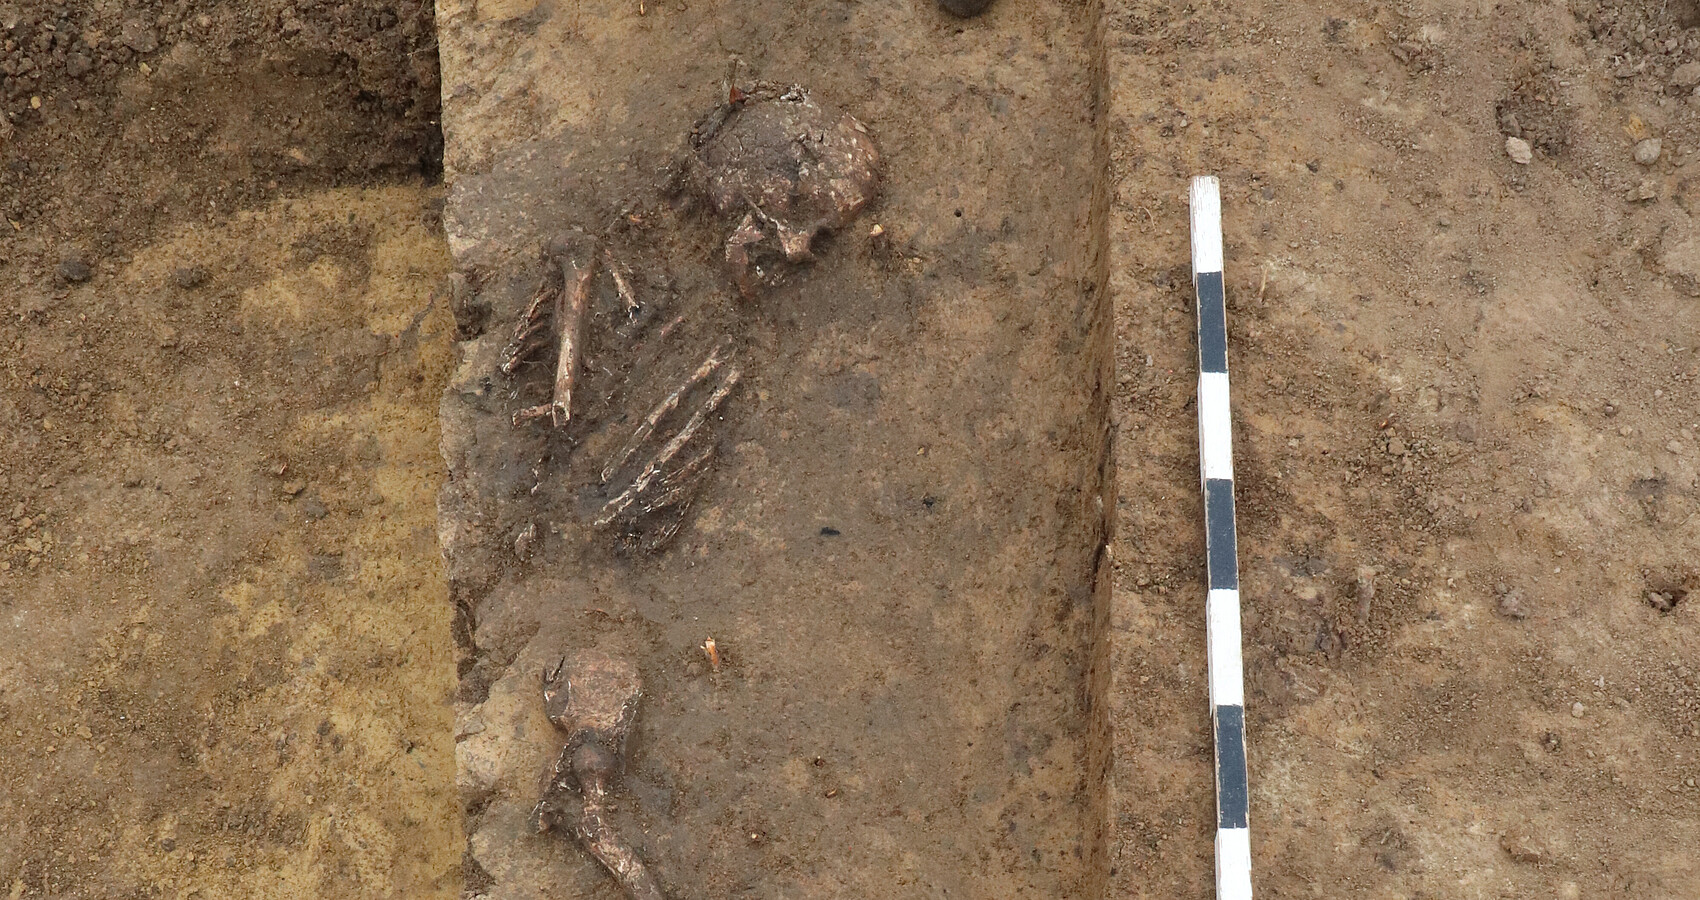 Freigelegtes Skelett der jungsteinzeitlichen Siedlungsbestattung, die im Südwesten der Ausgrabungsfläche in einer Grube geborgen wurde